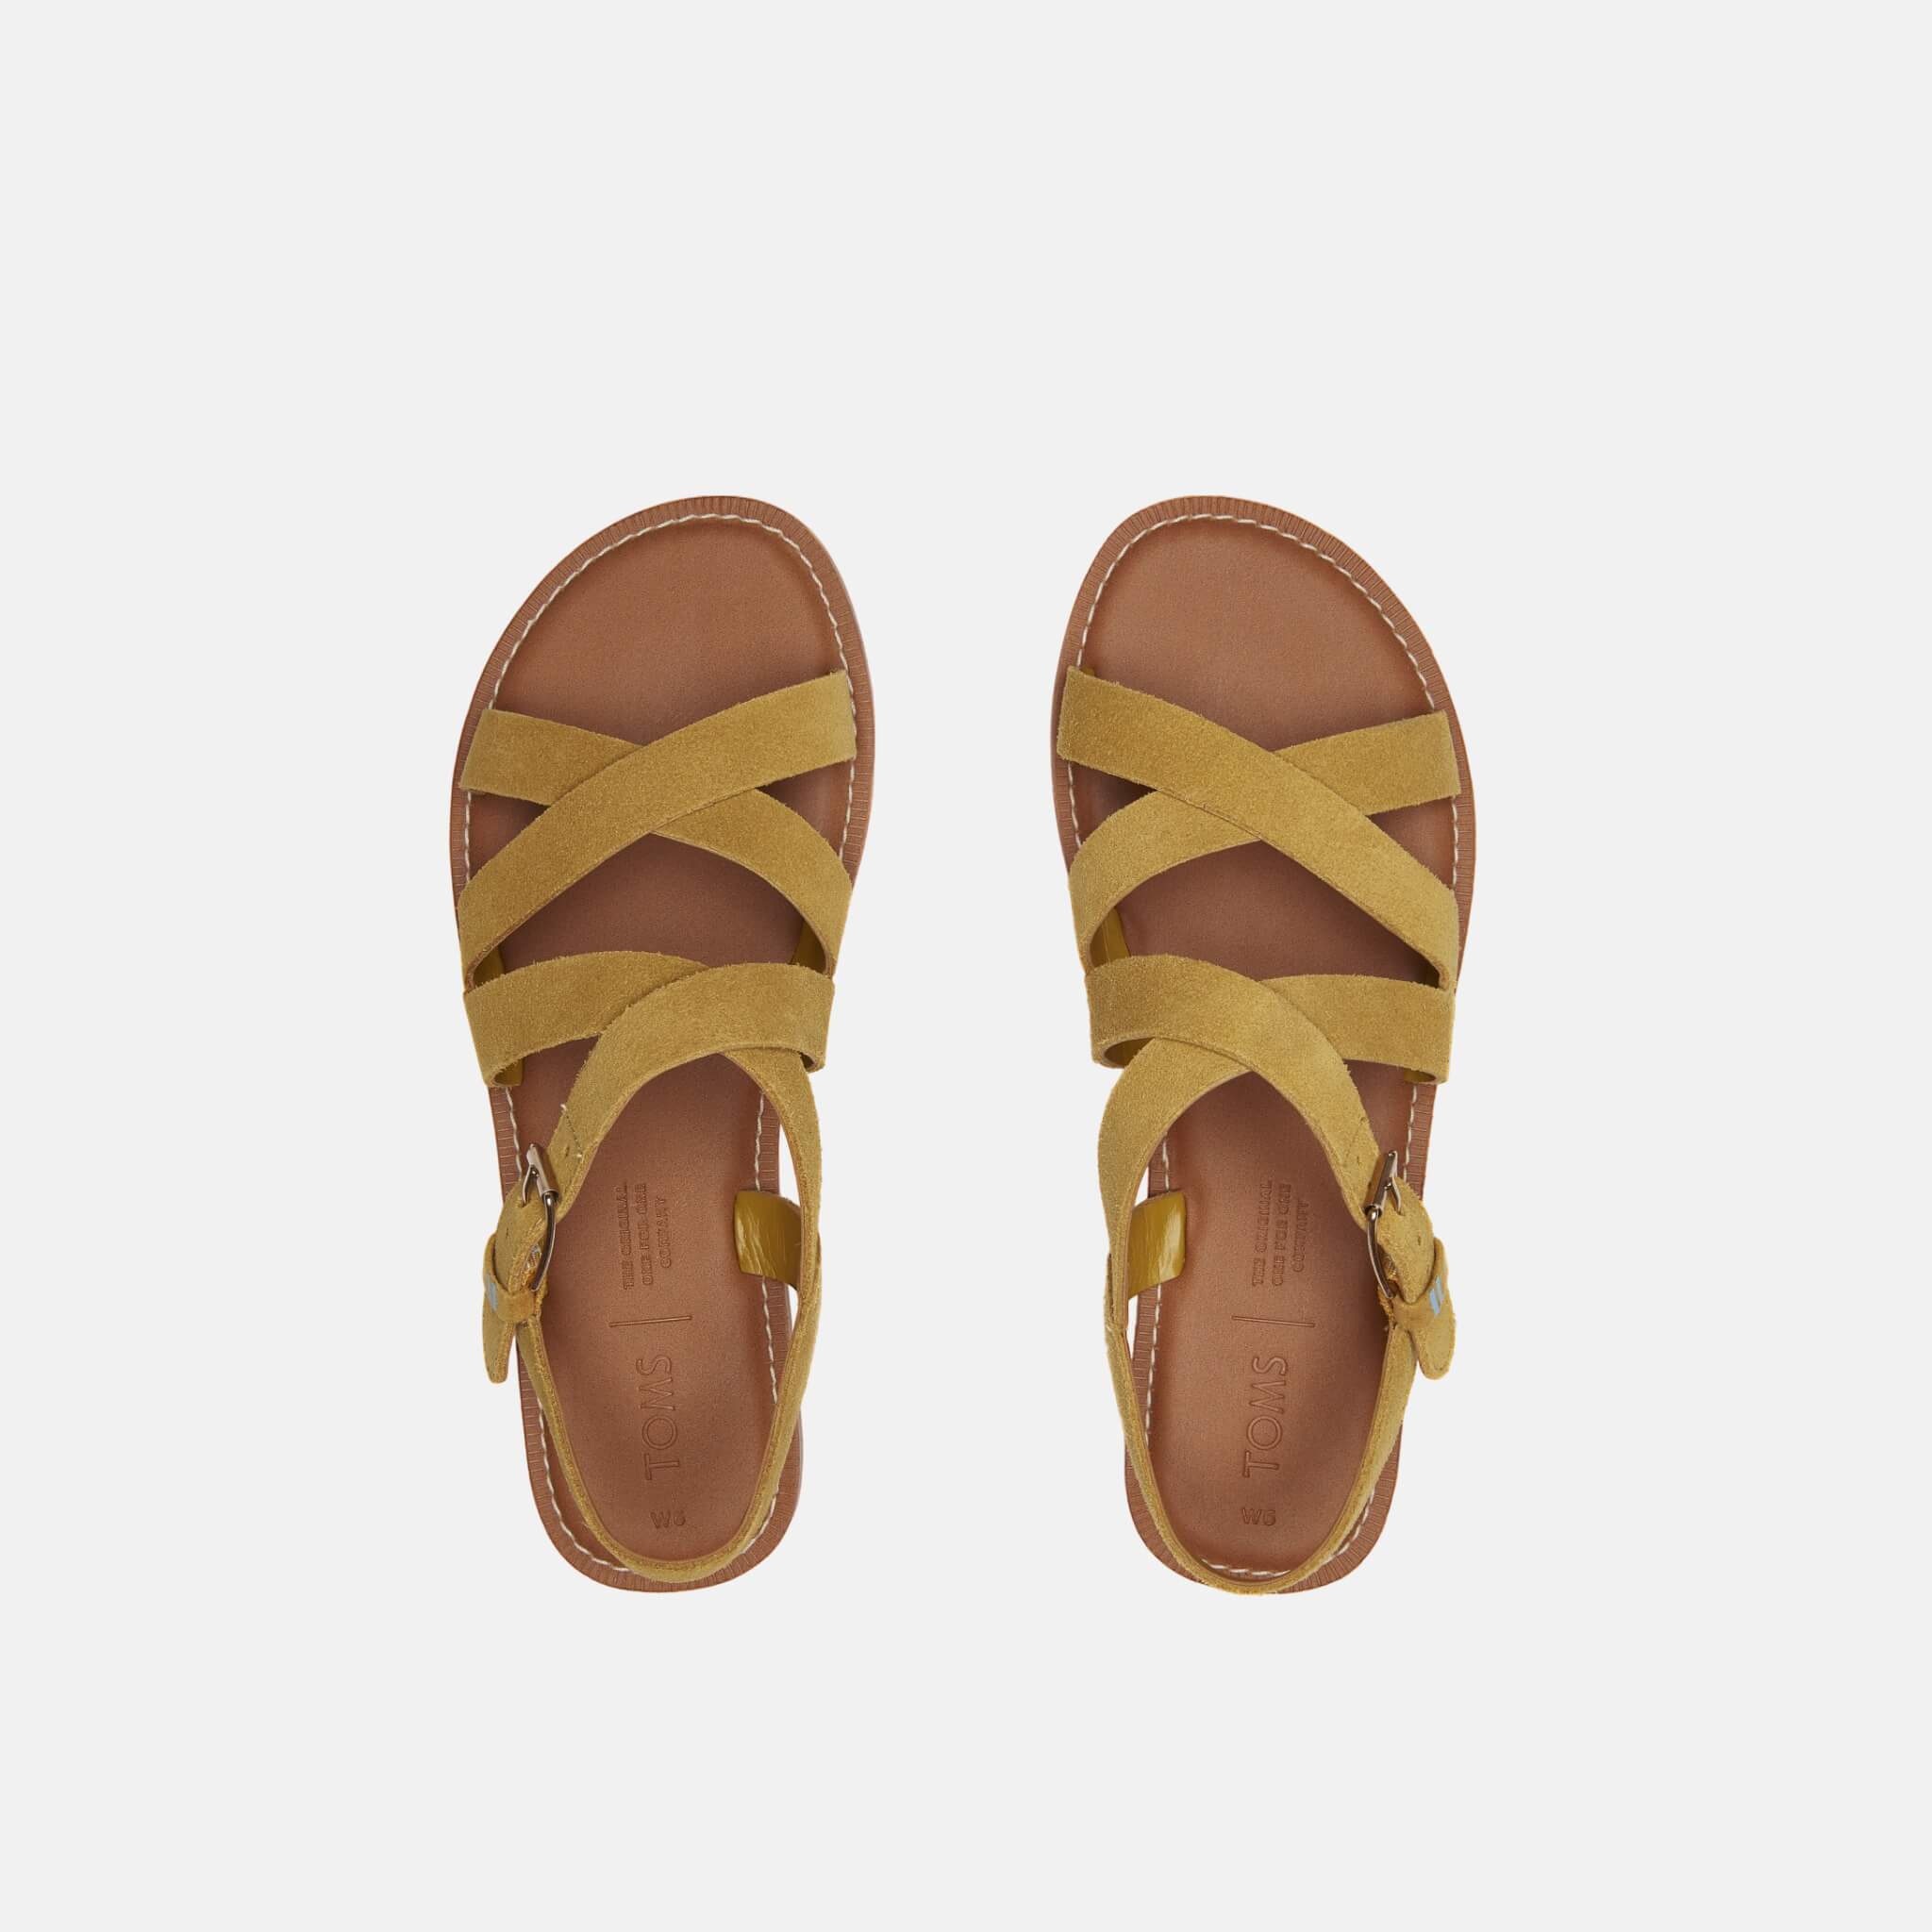 Dámské žluté semišové sandálky TOMS Sicily